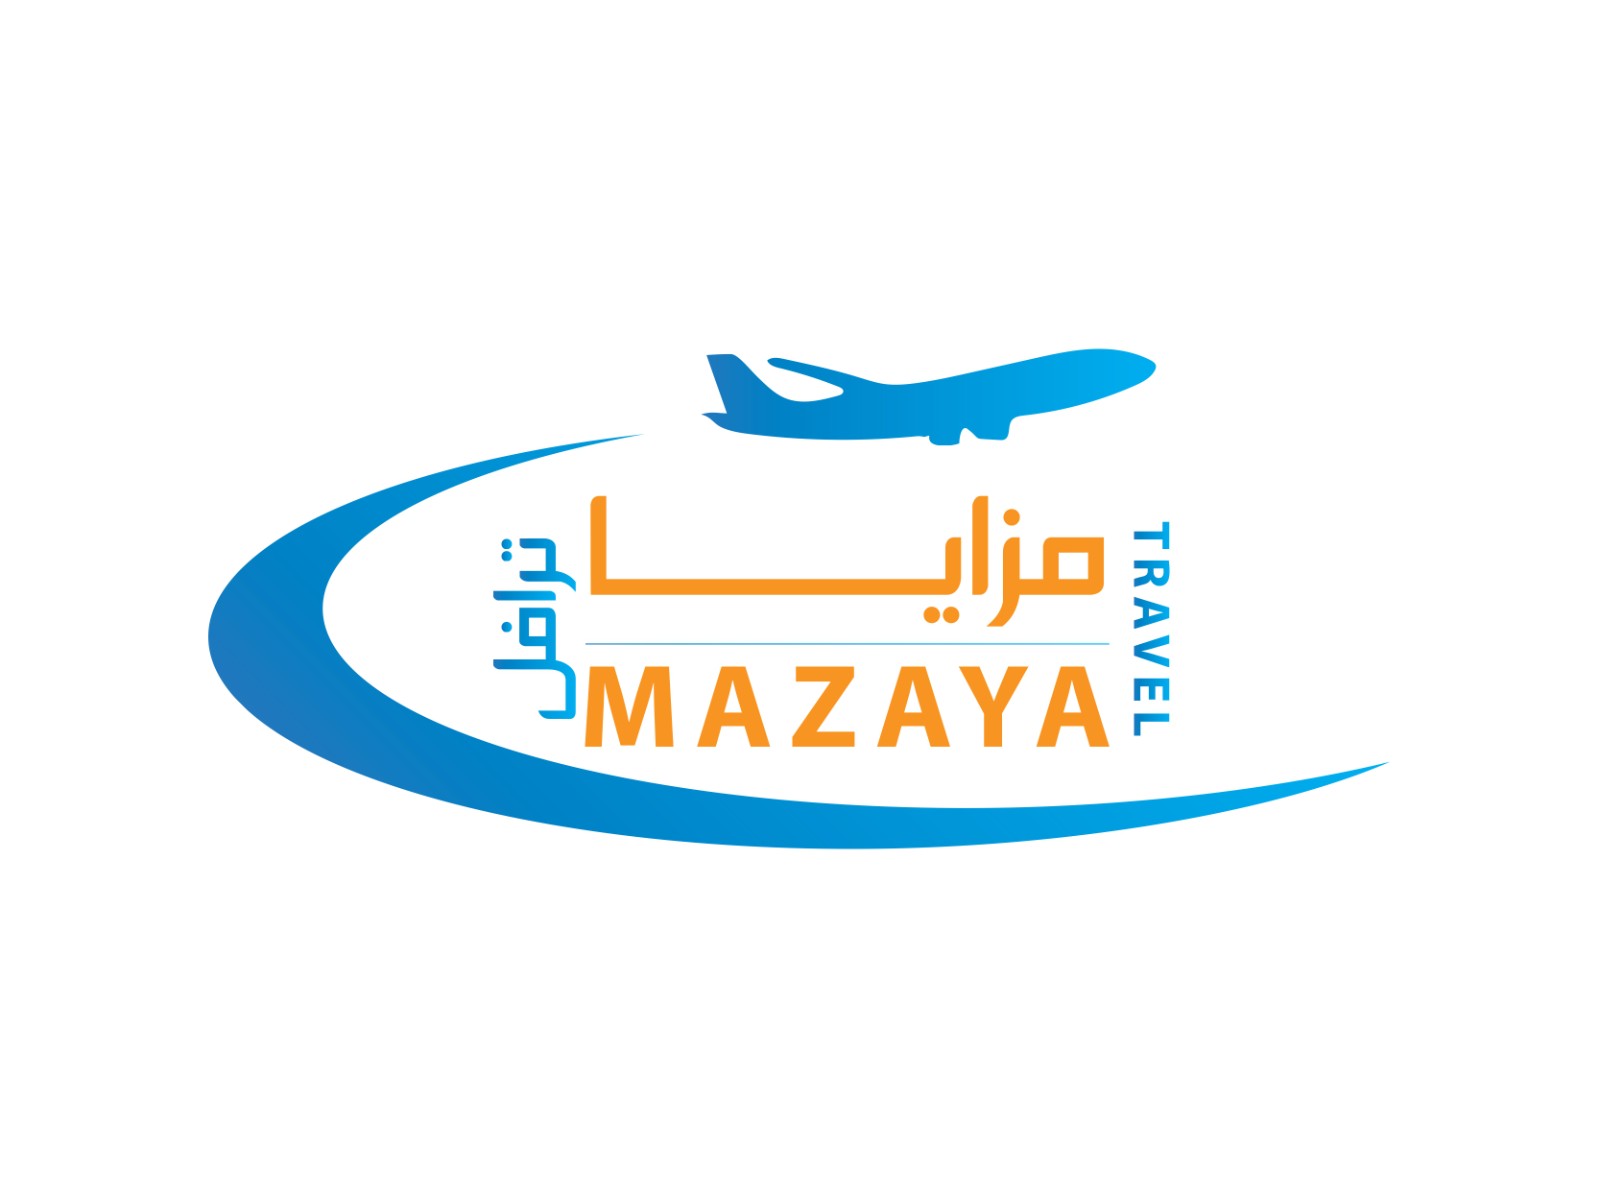 MAZAYA Travel